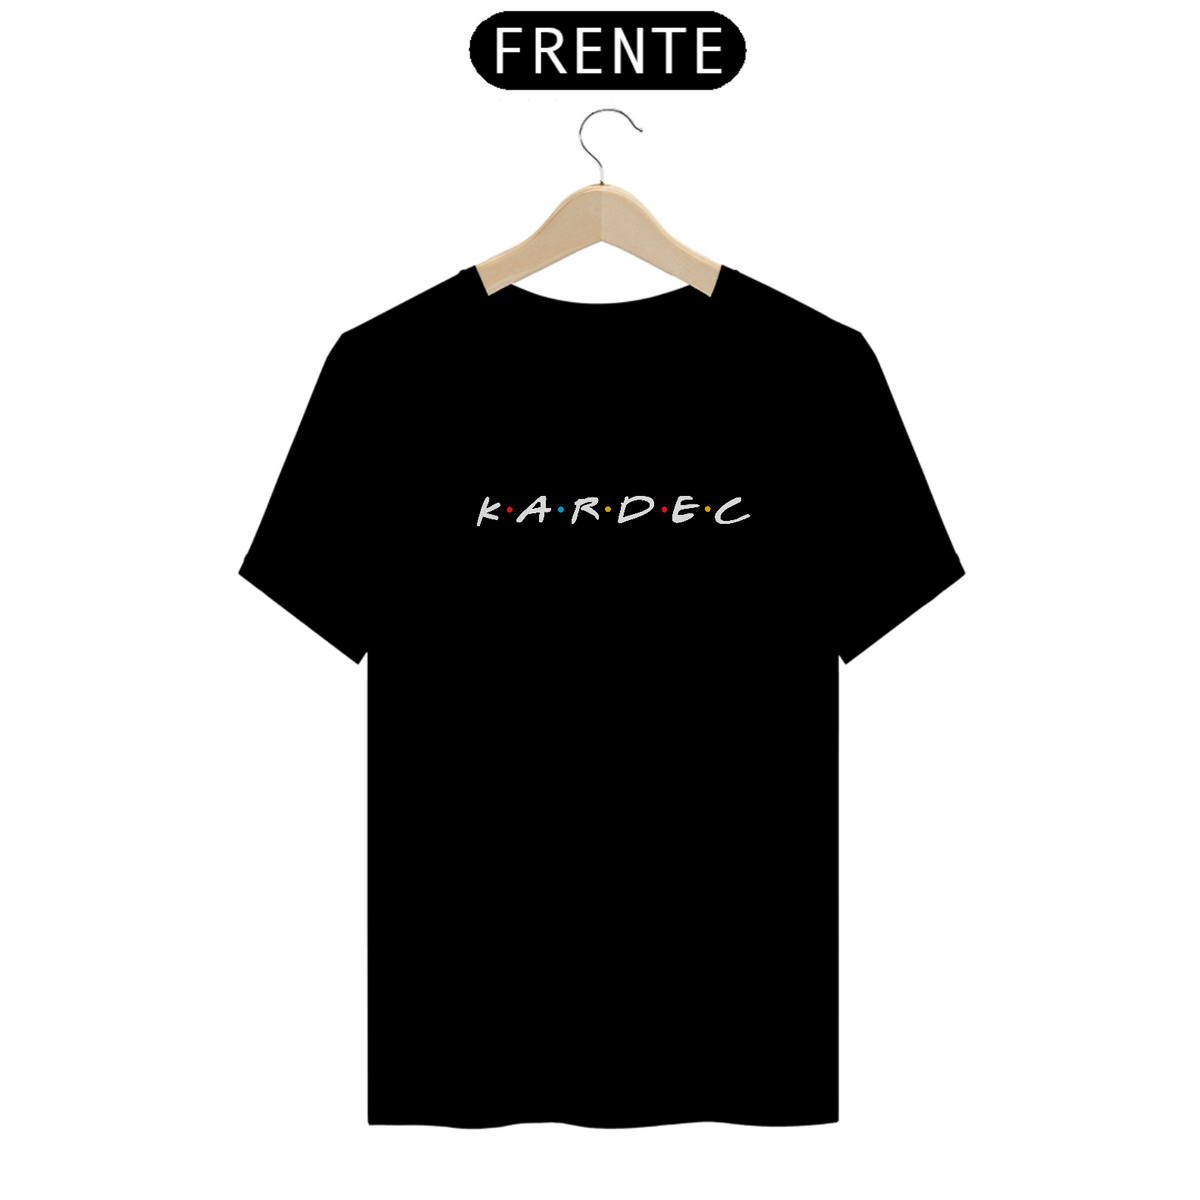 Nome do produto: Camiseta Friends Kardec